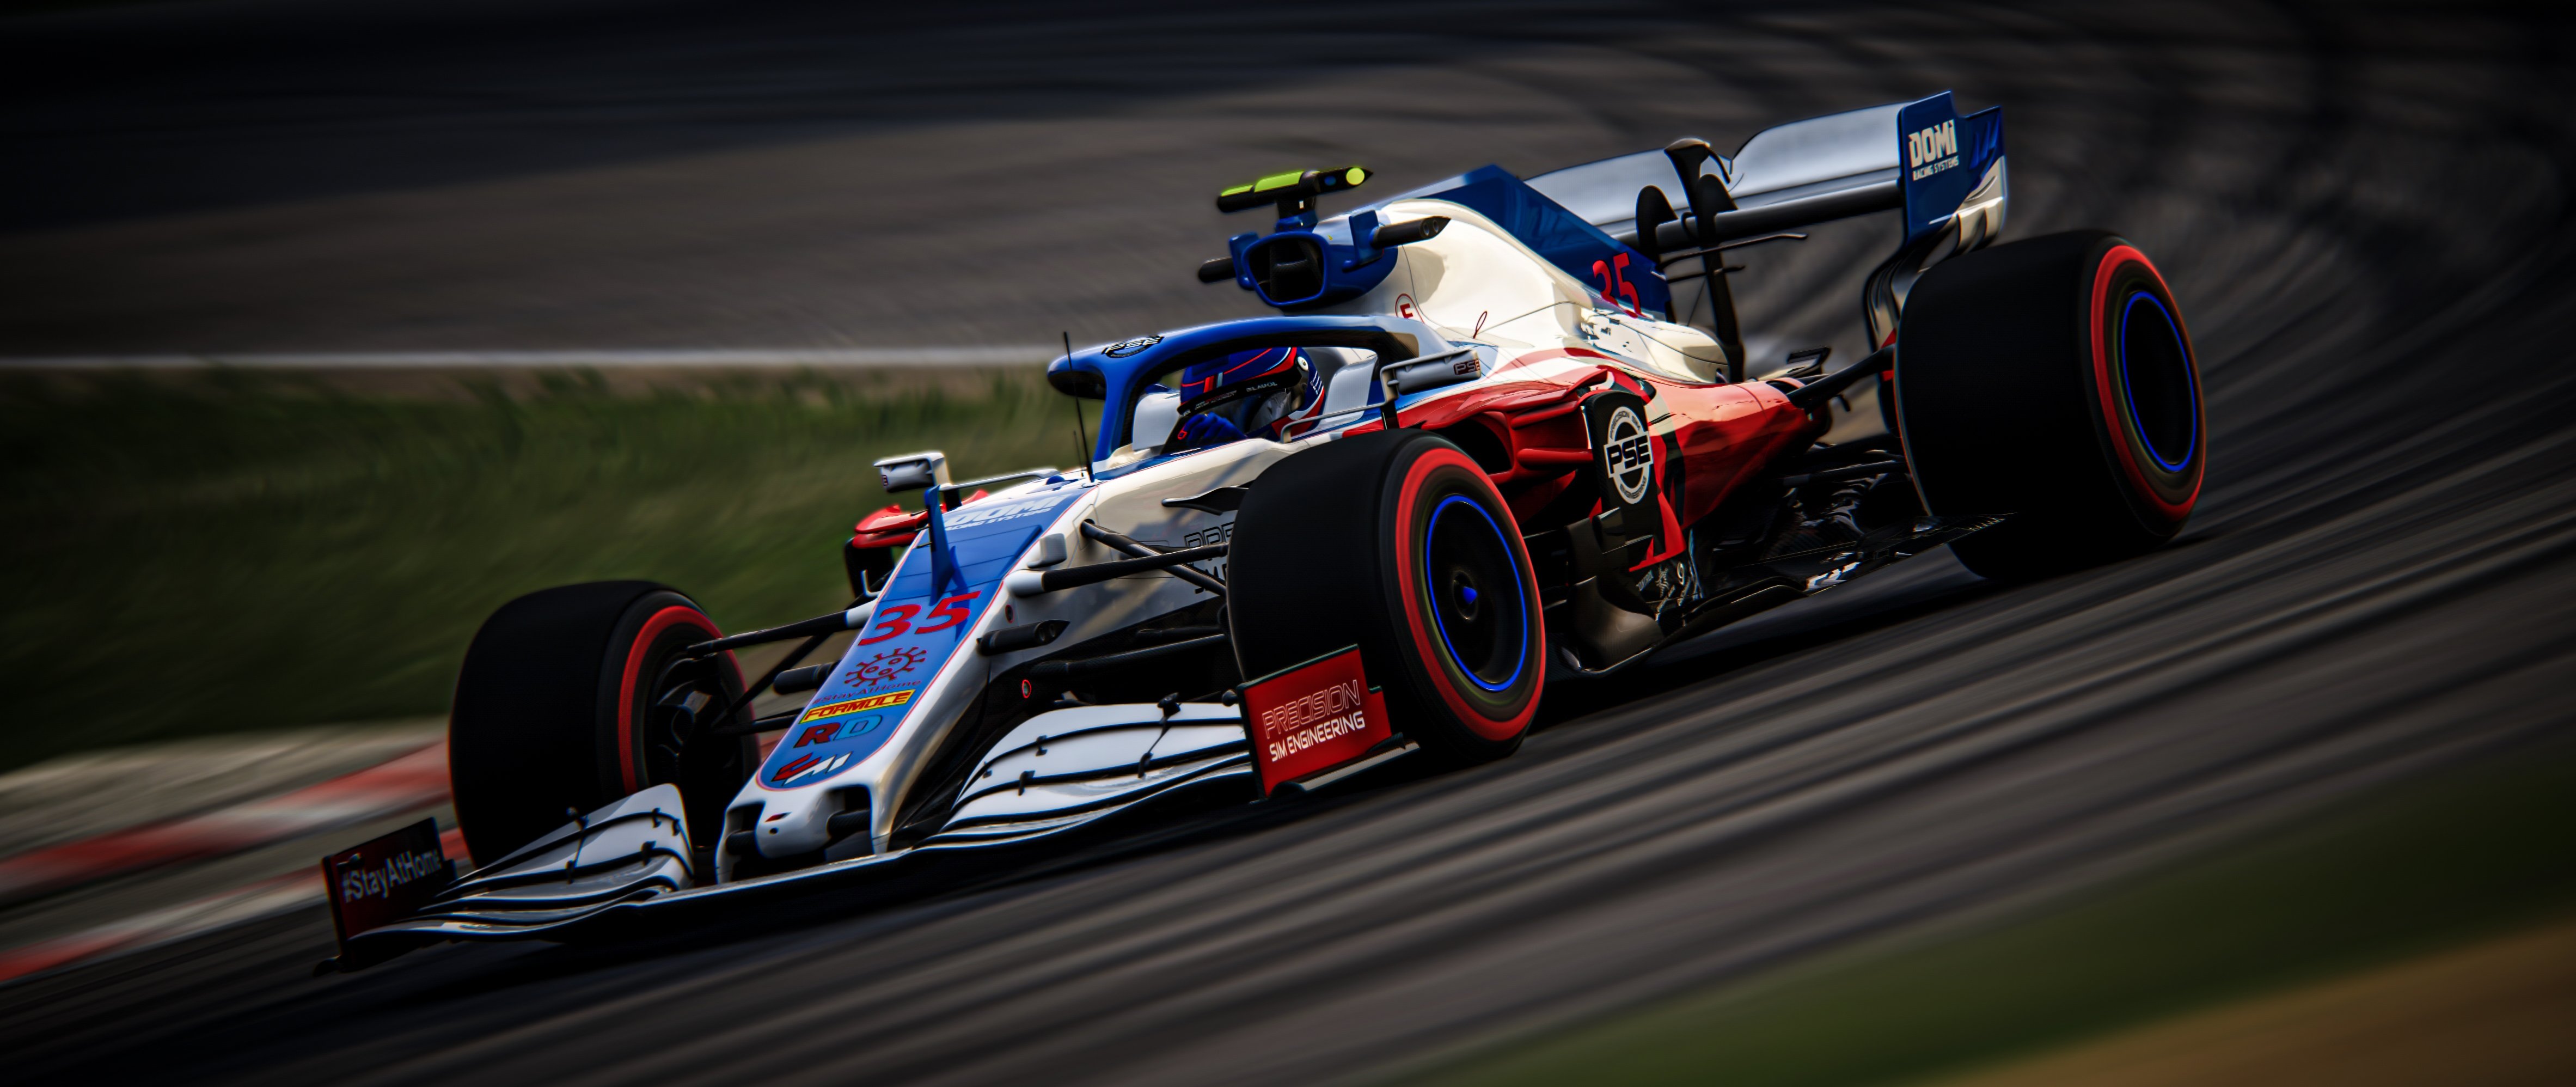 More information about "Assetto Corsa: Race Sim Studio annuncia la nuova Formula Hybrid 2020, livello di qualità incredibile!"